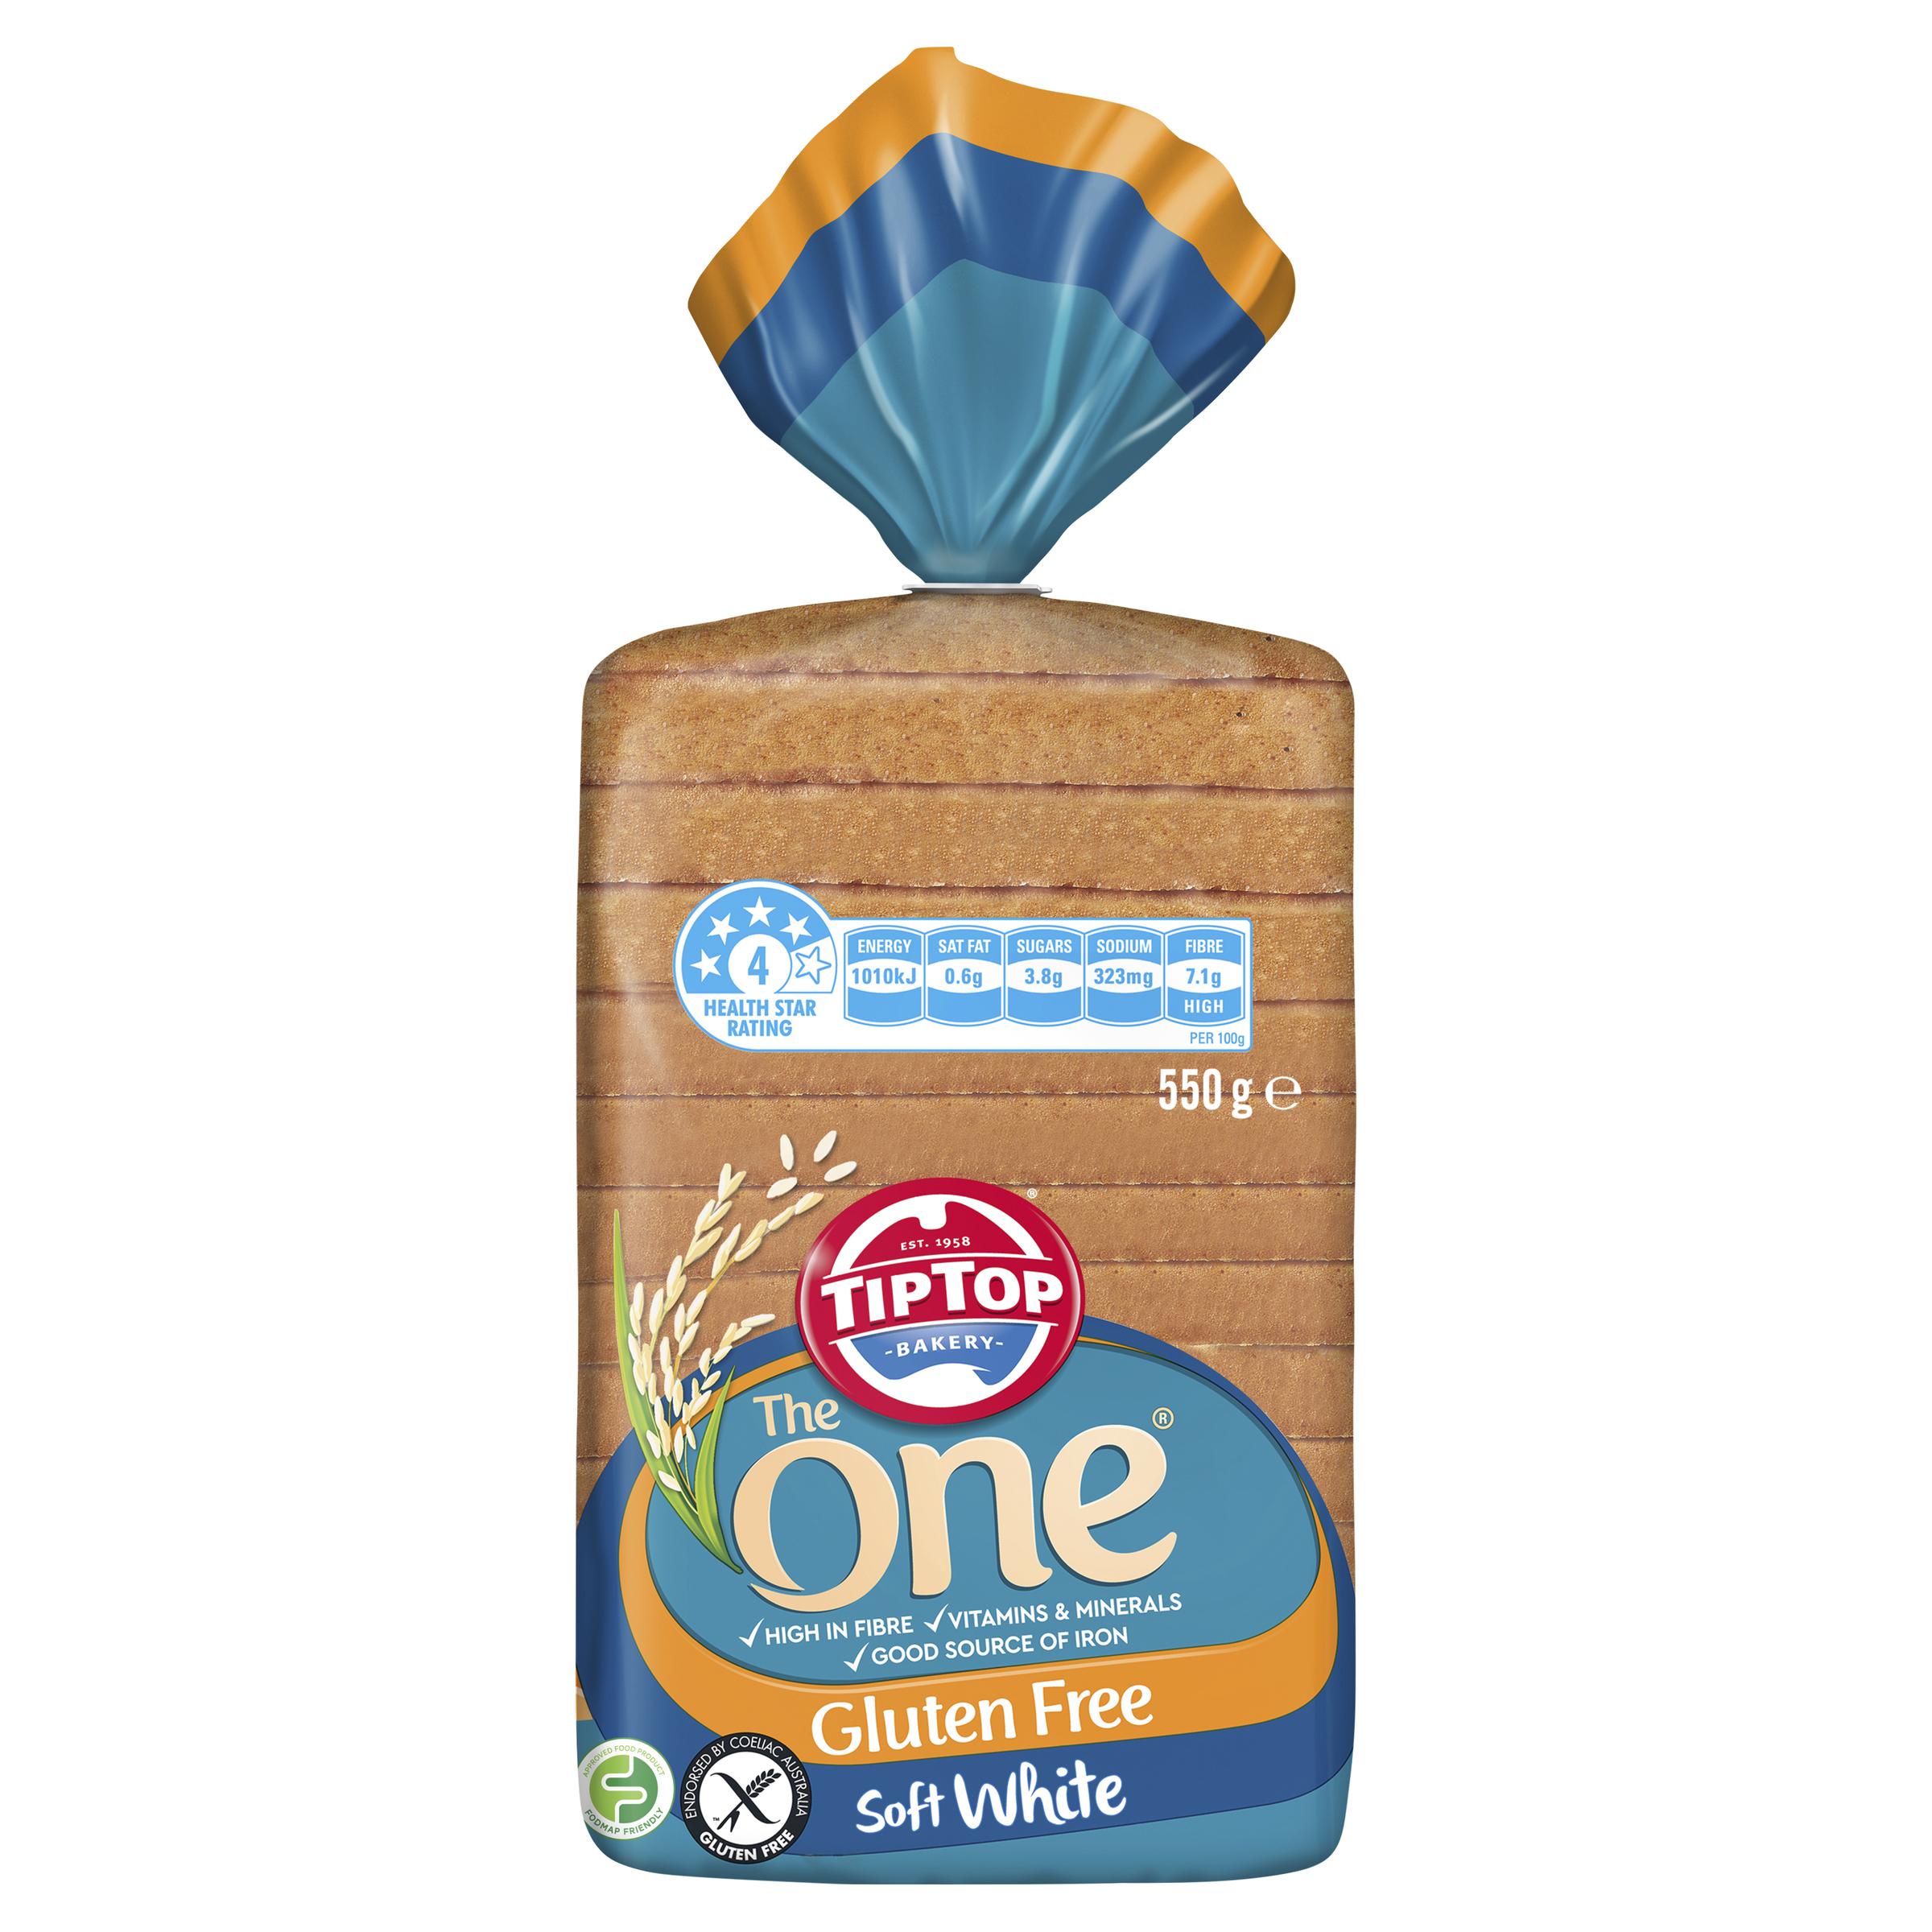 Tip Top Gluten Free White Sandwich Slice Bread Loaf 550g